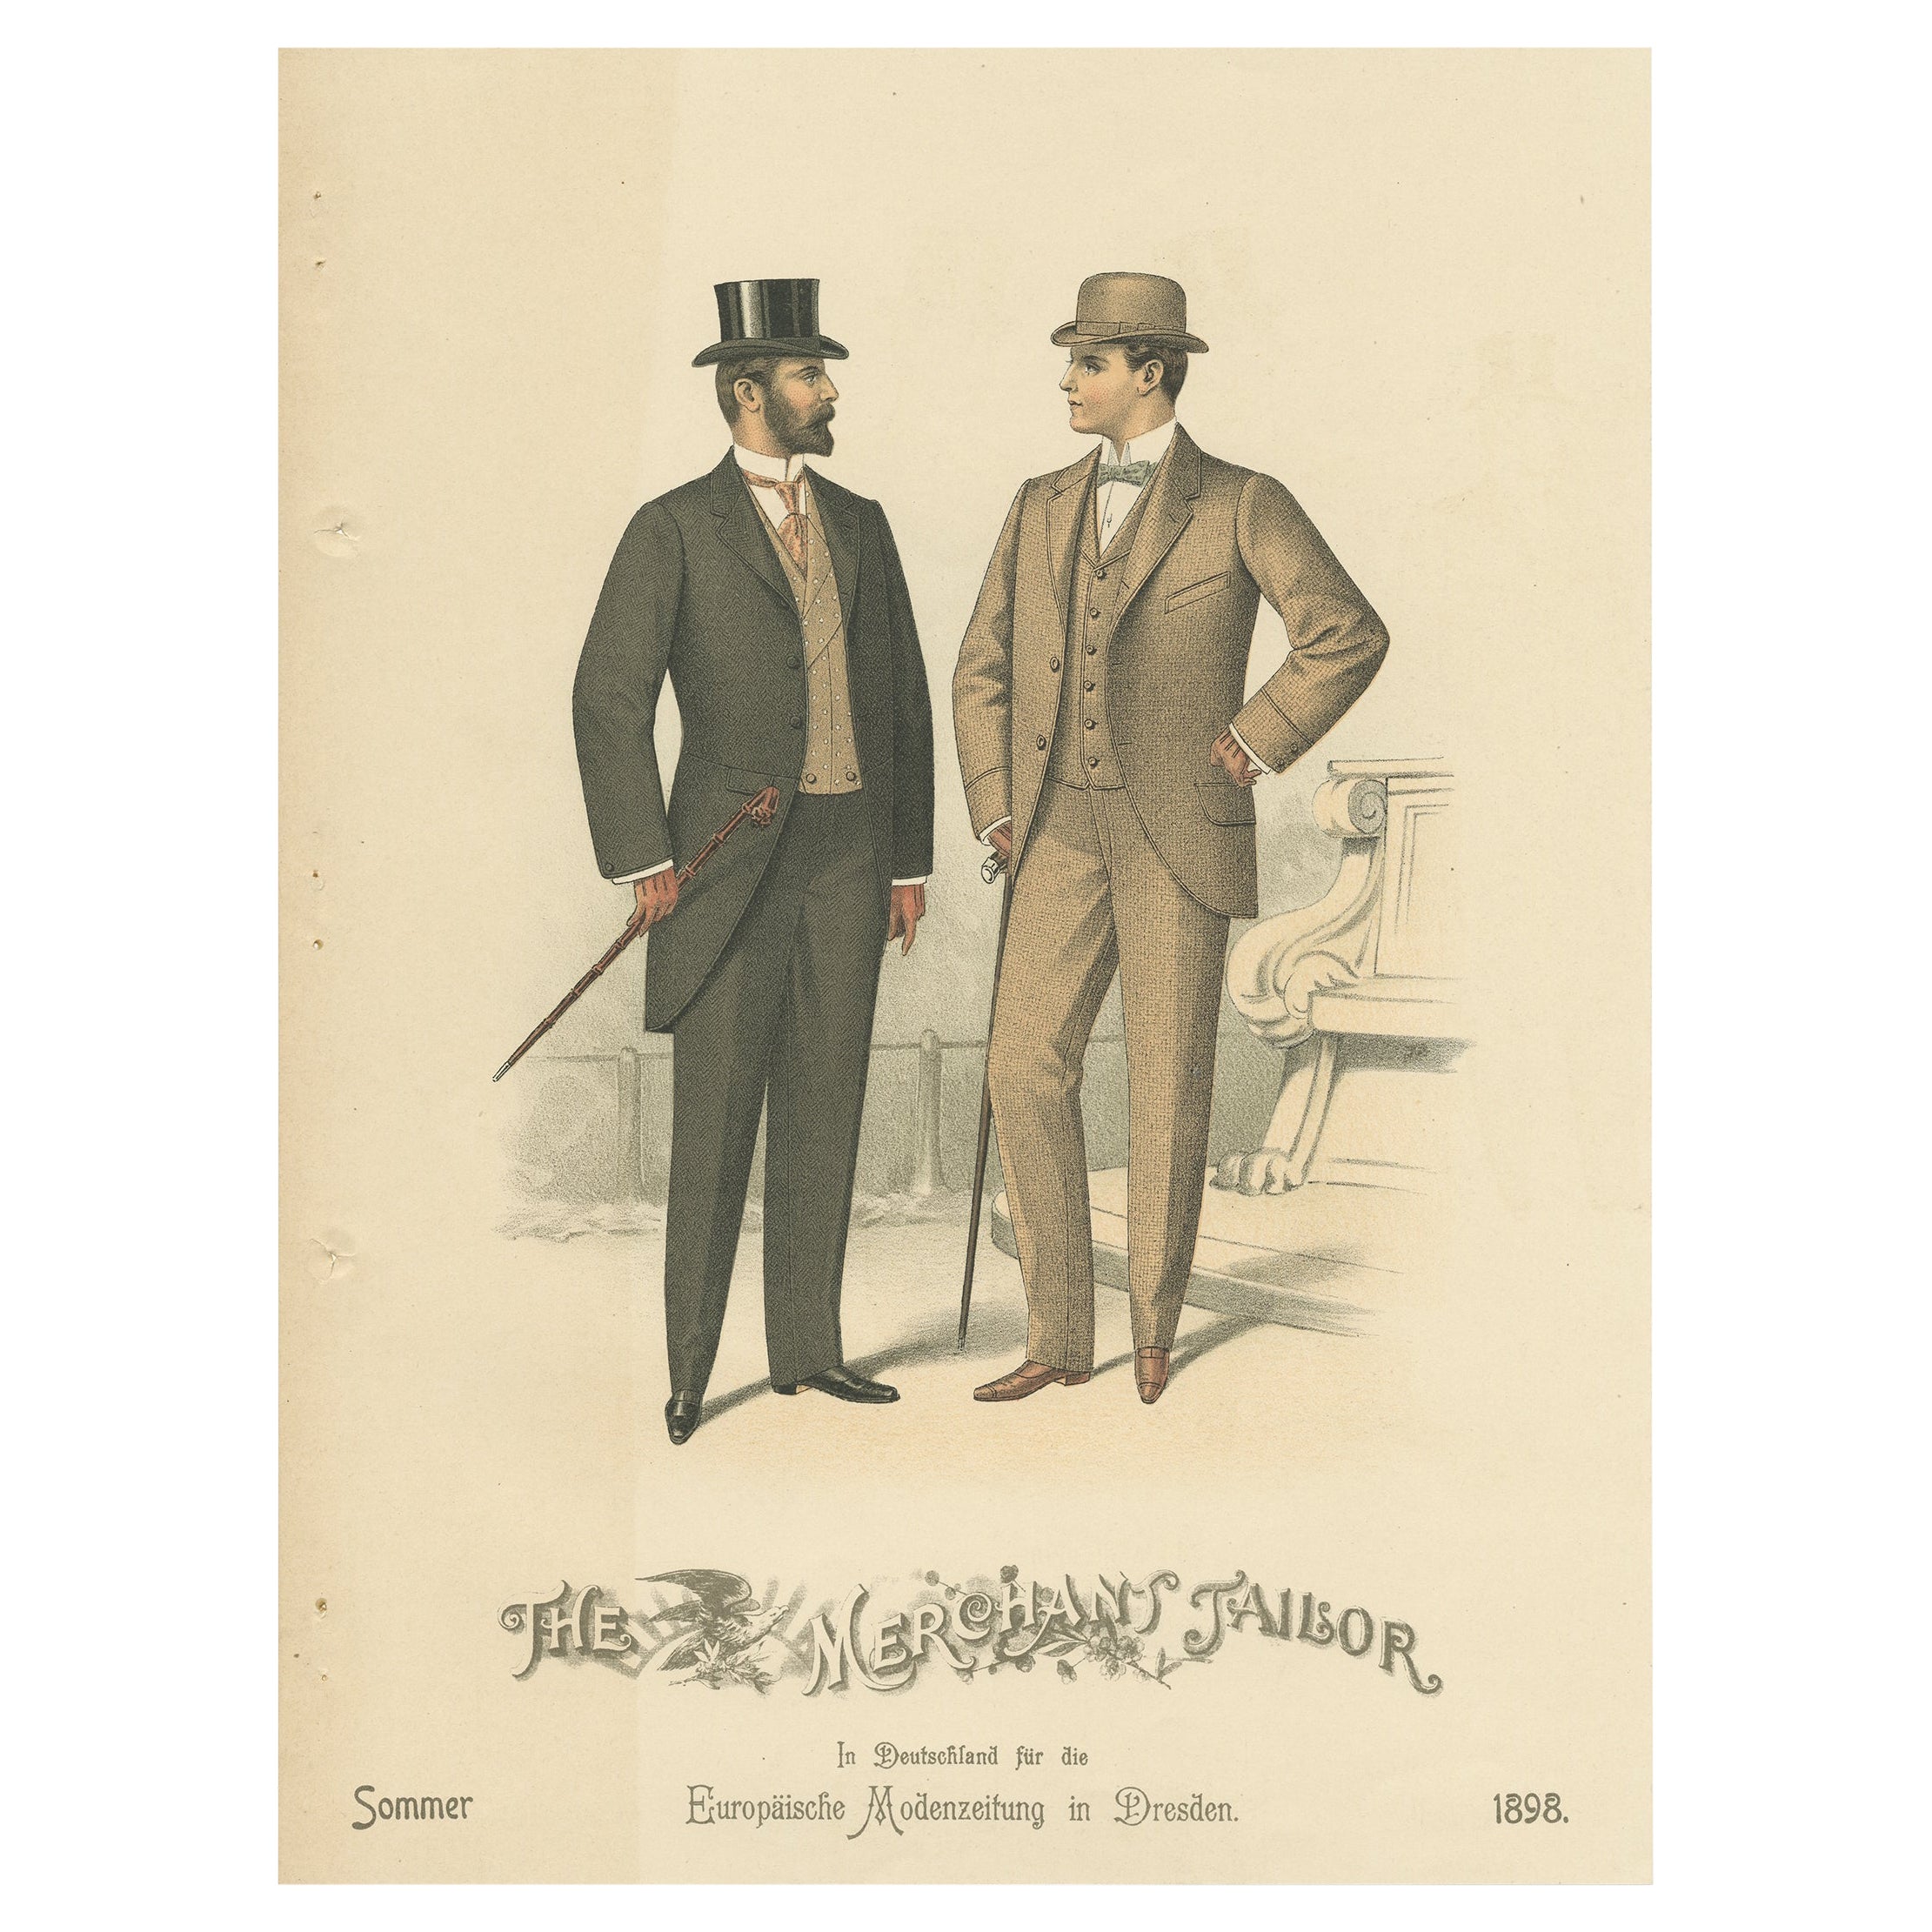 Old Fashion-Druck von Männern, die Modetrends des Sommers 1898 illustrieren